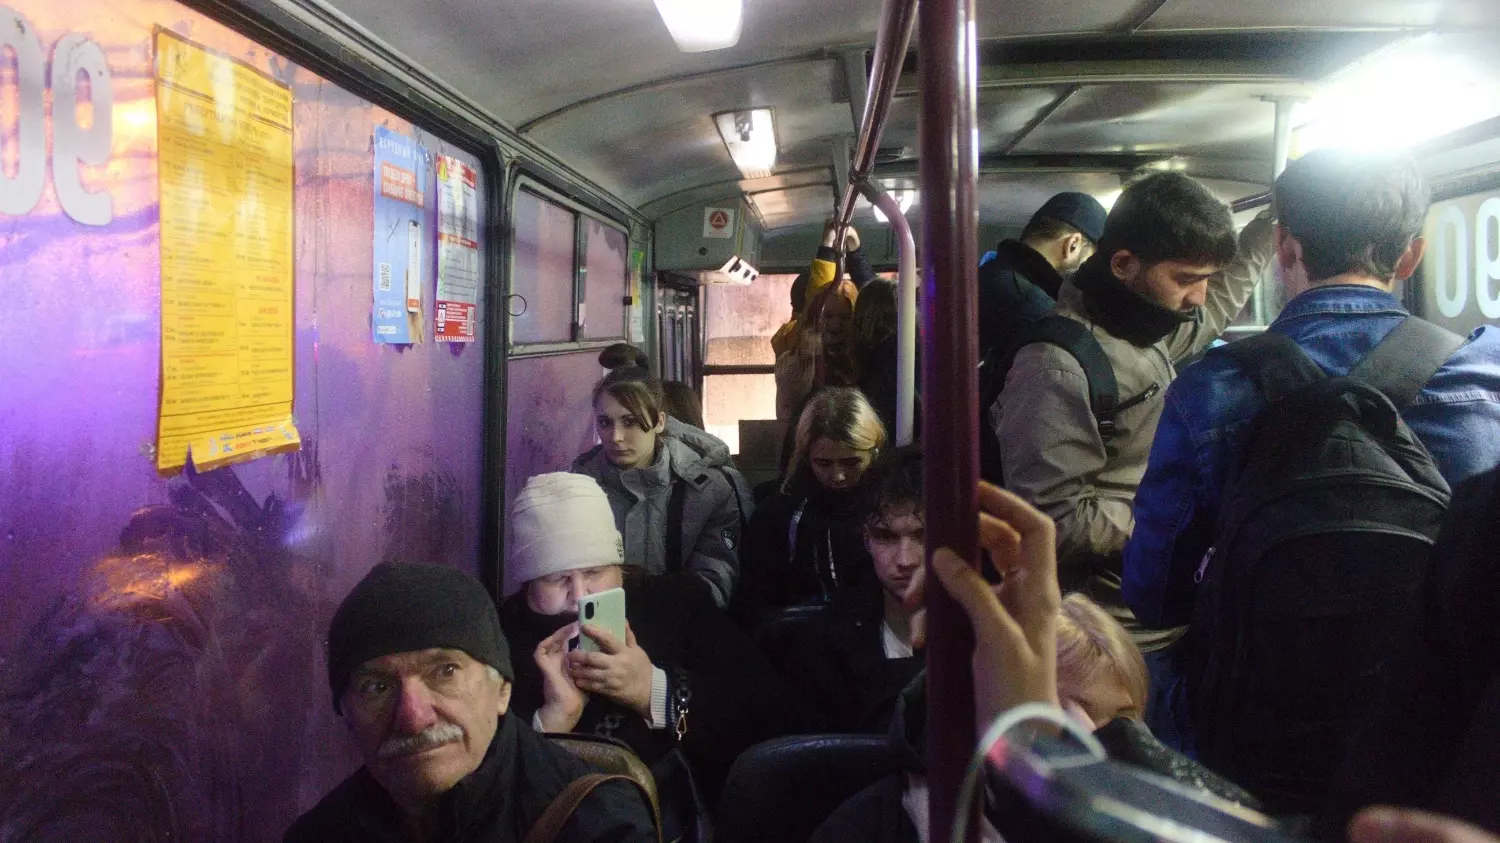 После семи в троллейбусах города даже можно найти свободное сидячее место.